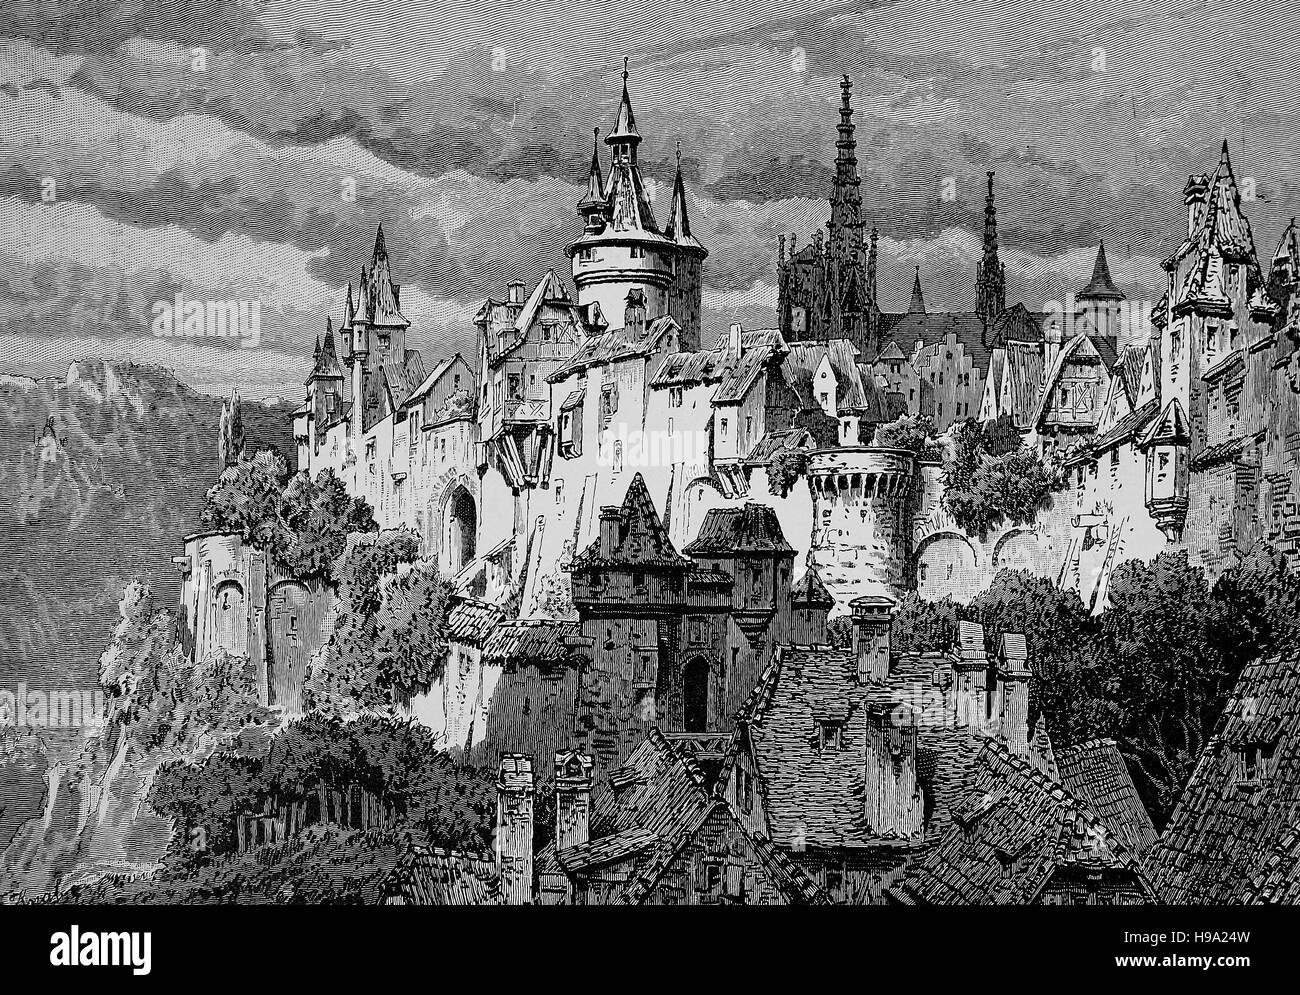 Typische Stadtmauer in einer mittelalterlichen Stadt, die historische Abbildung Stockfoto